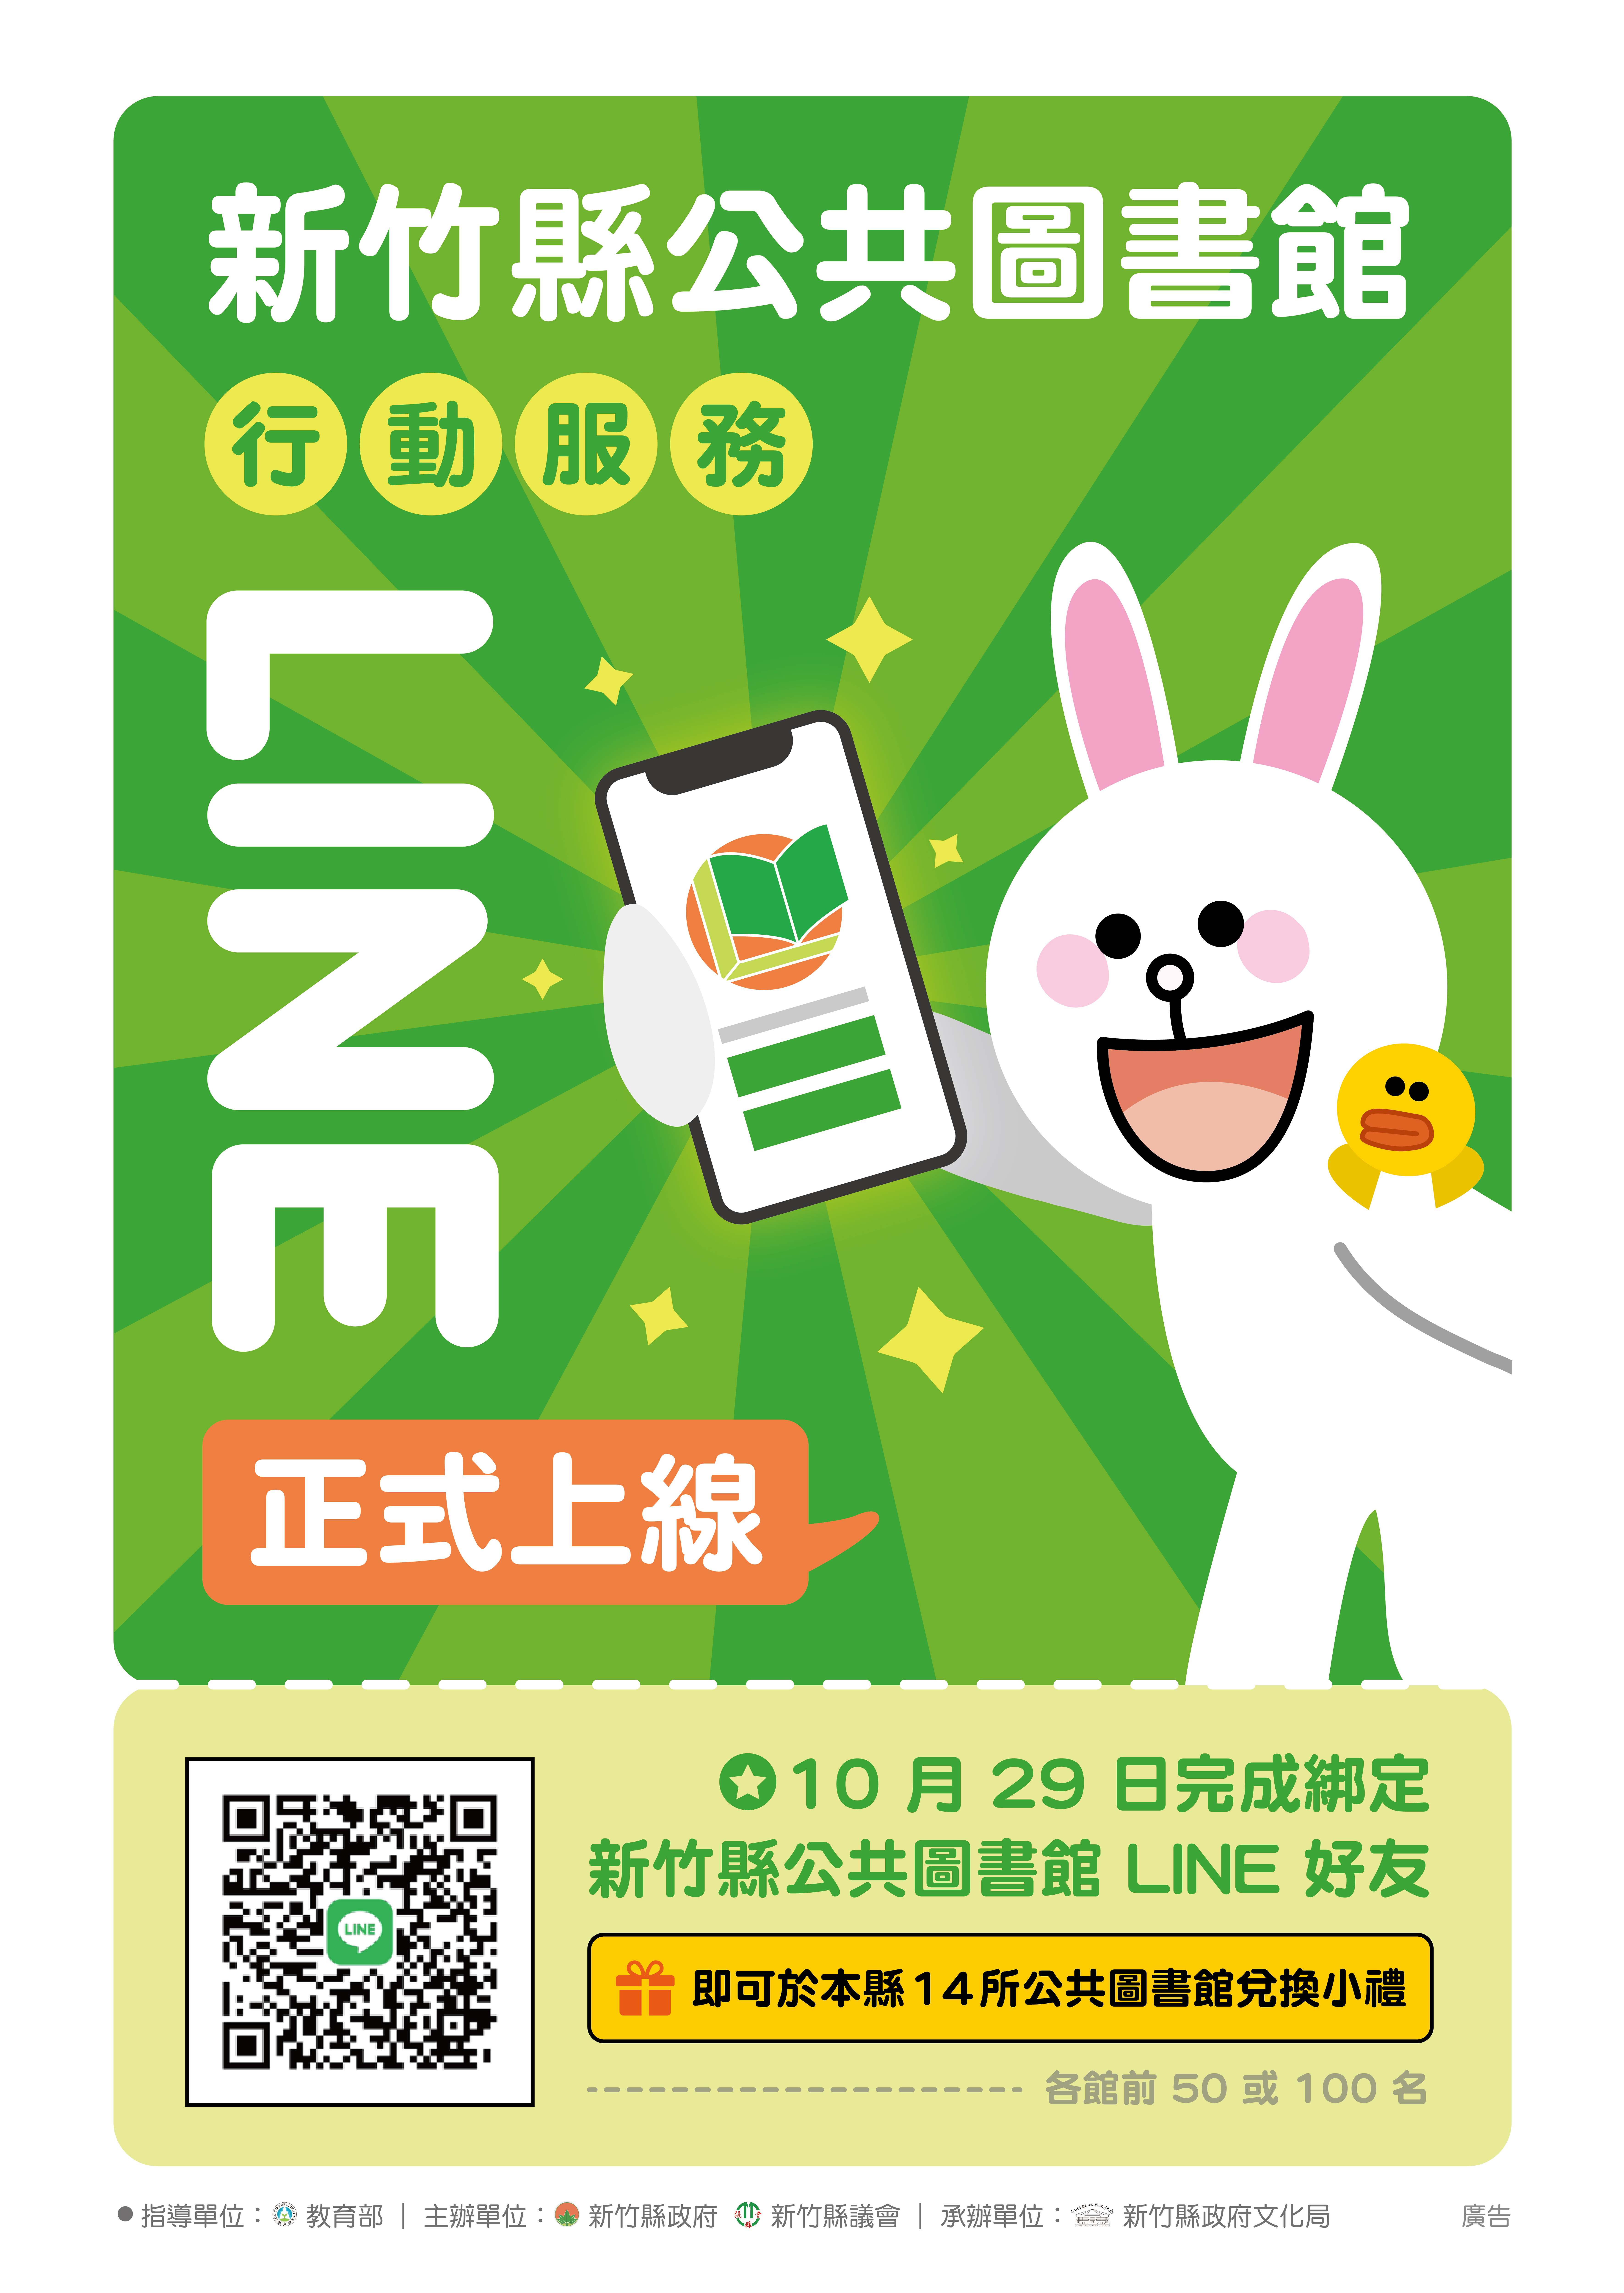 【綜合公告】新竹縣公共圖書館行動服務LINE正式上線，歡迎多加利用!